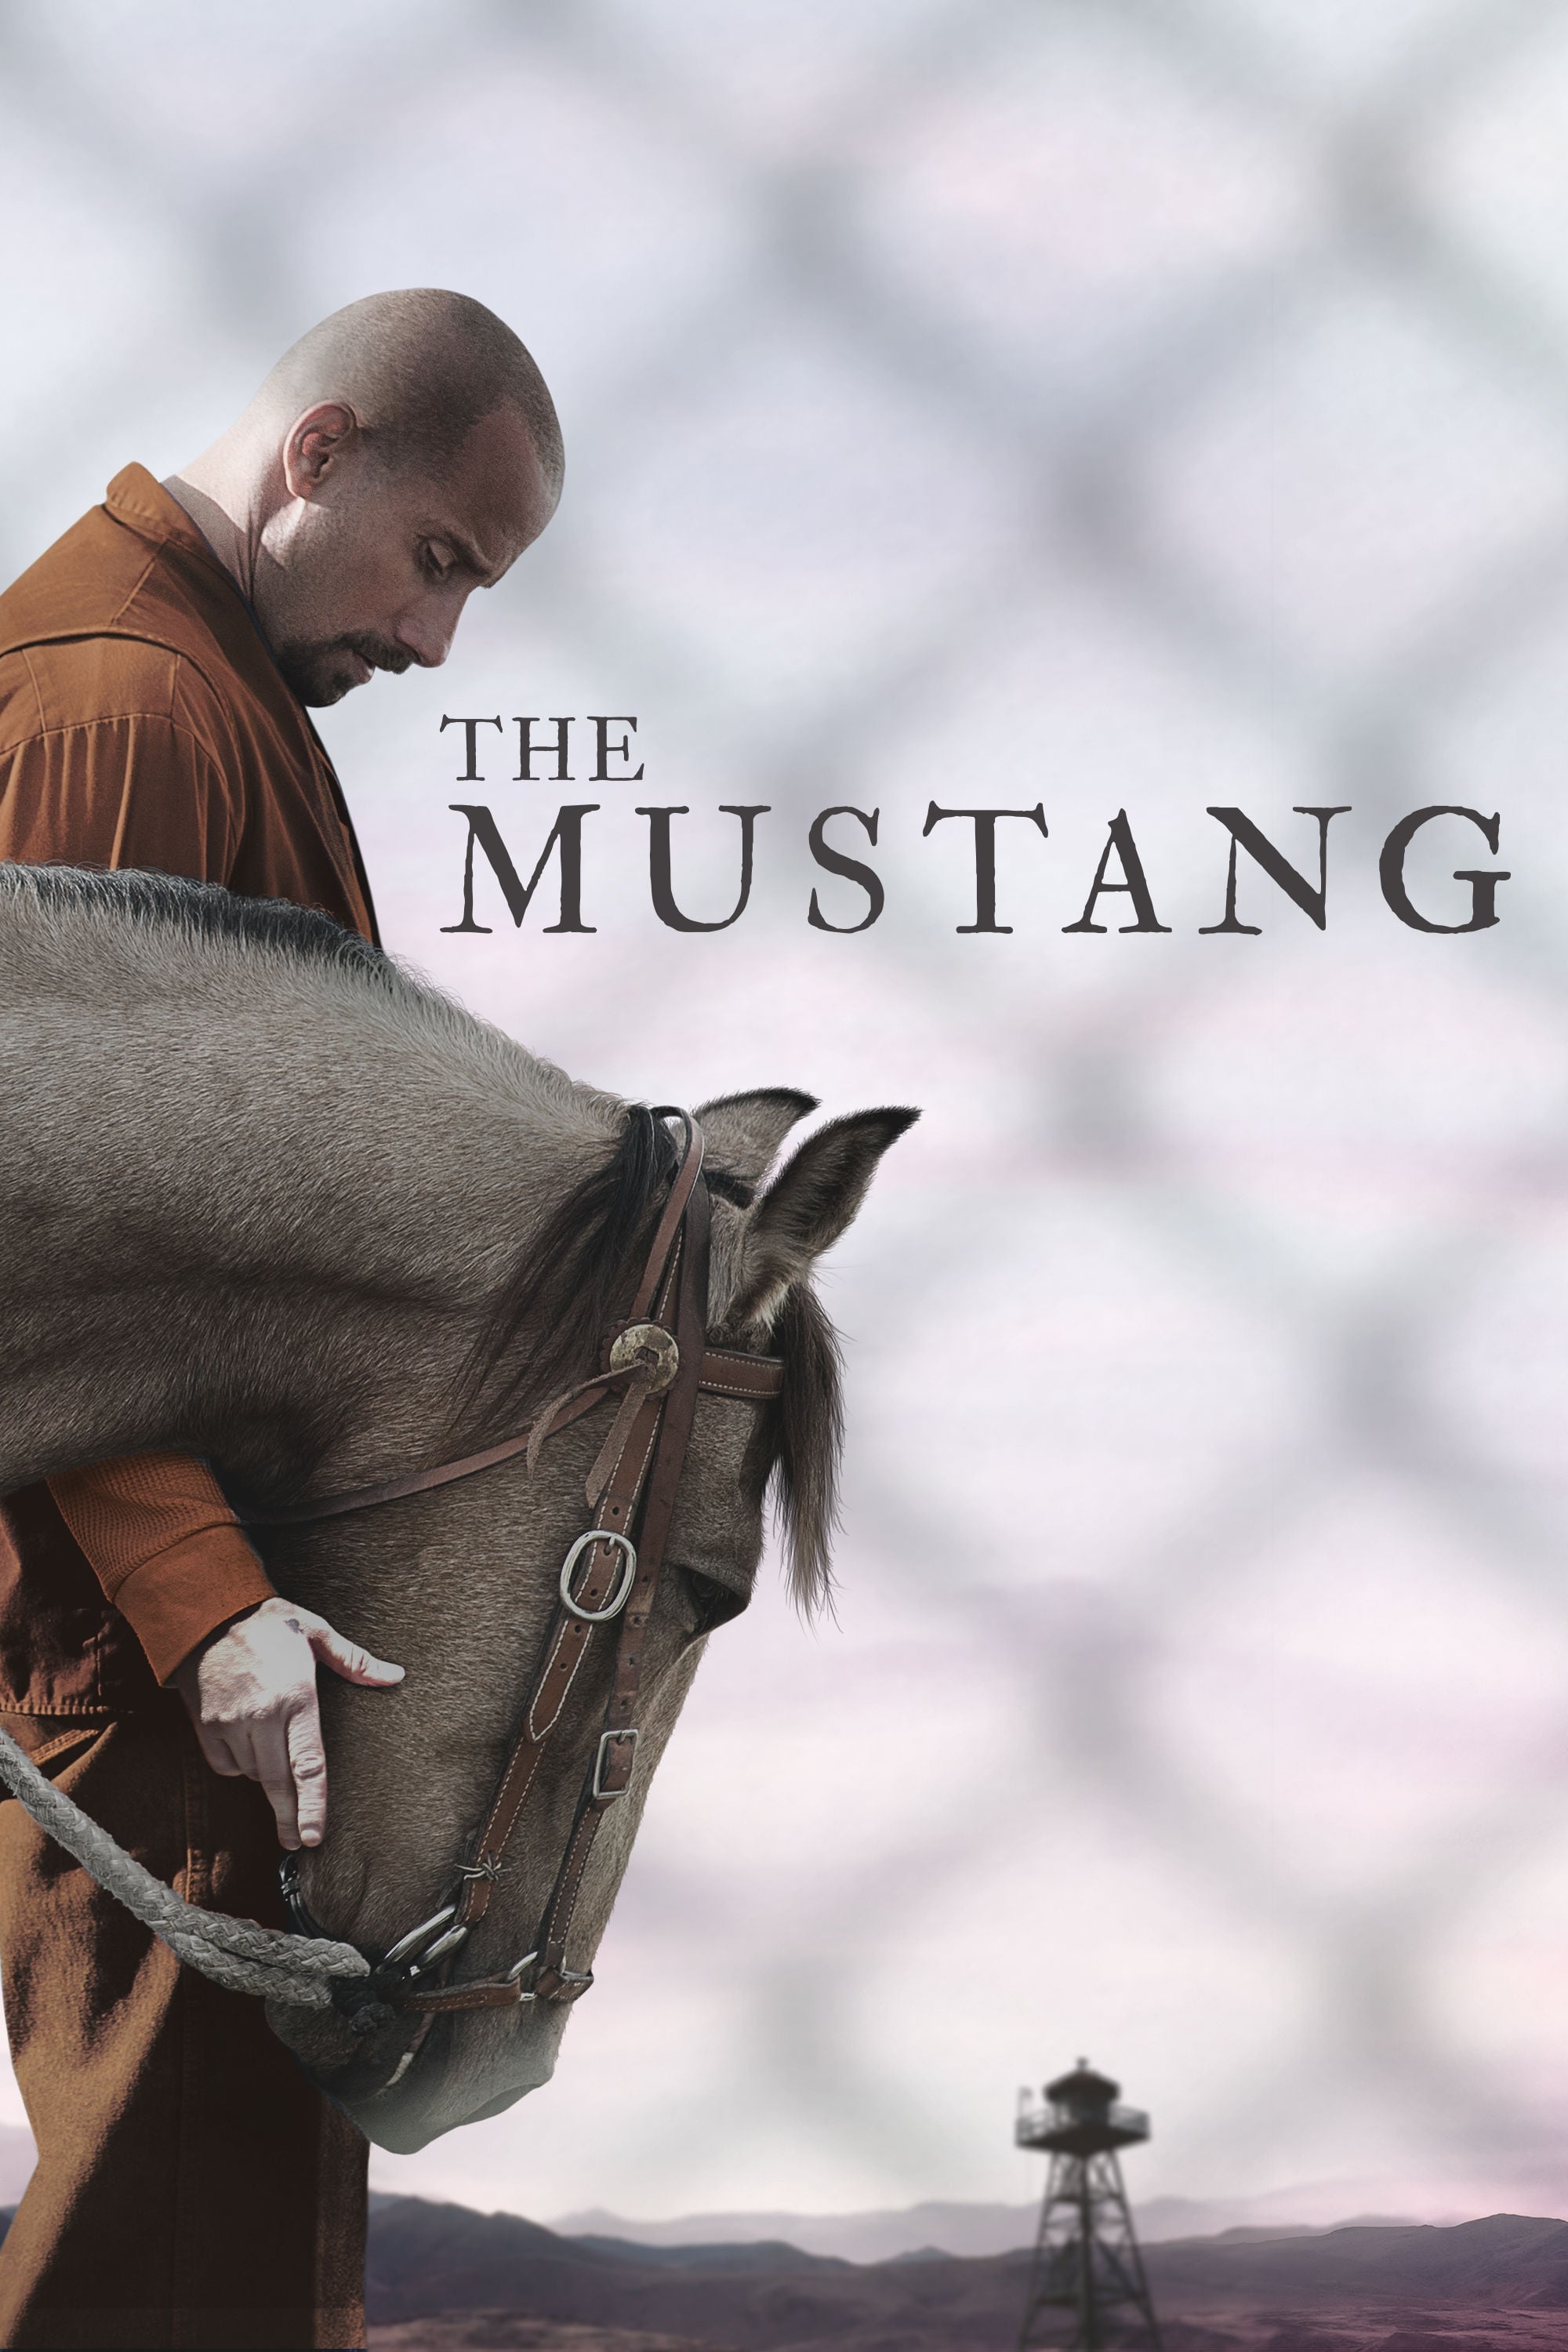 Mustang: Thuần hóa (The Mustang) [2019]